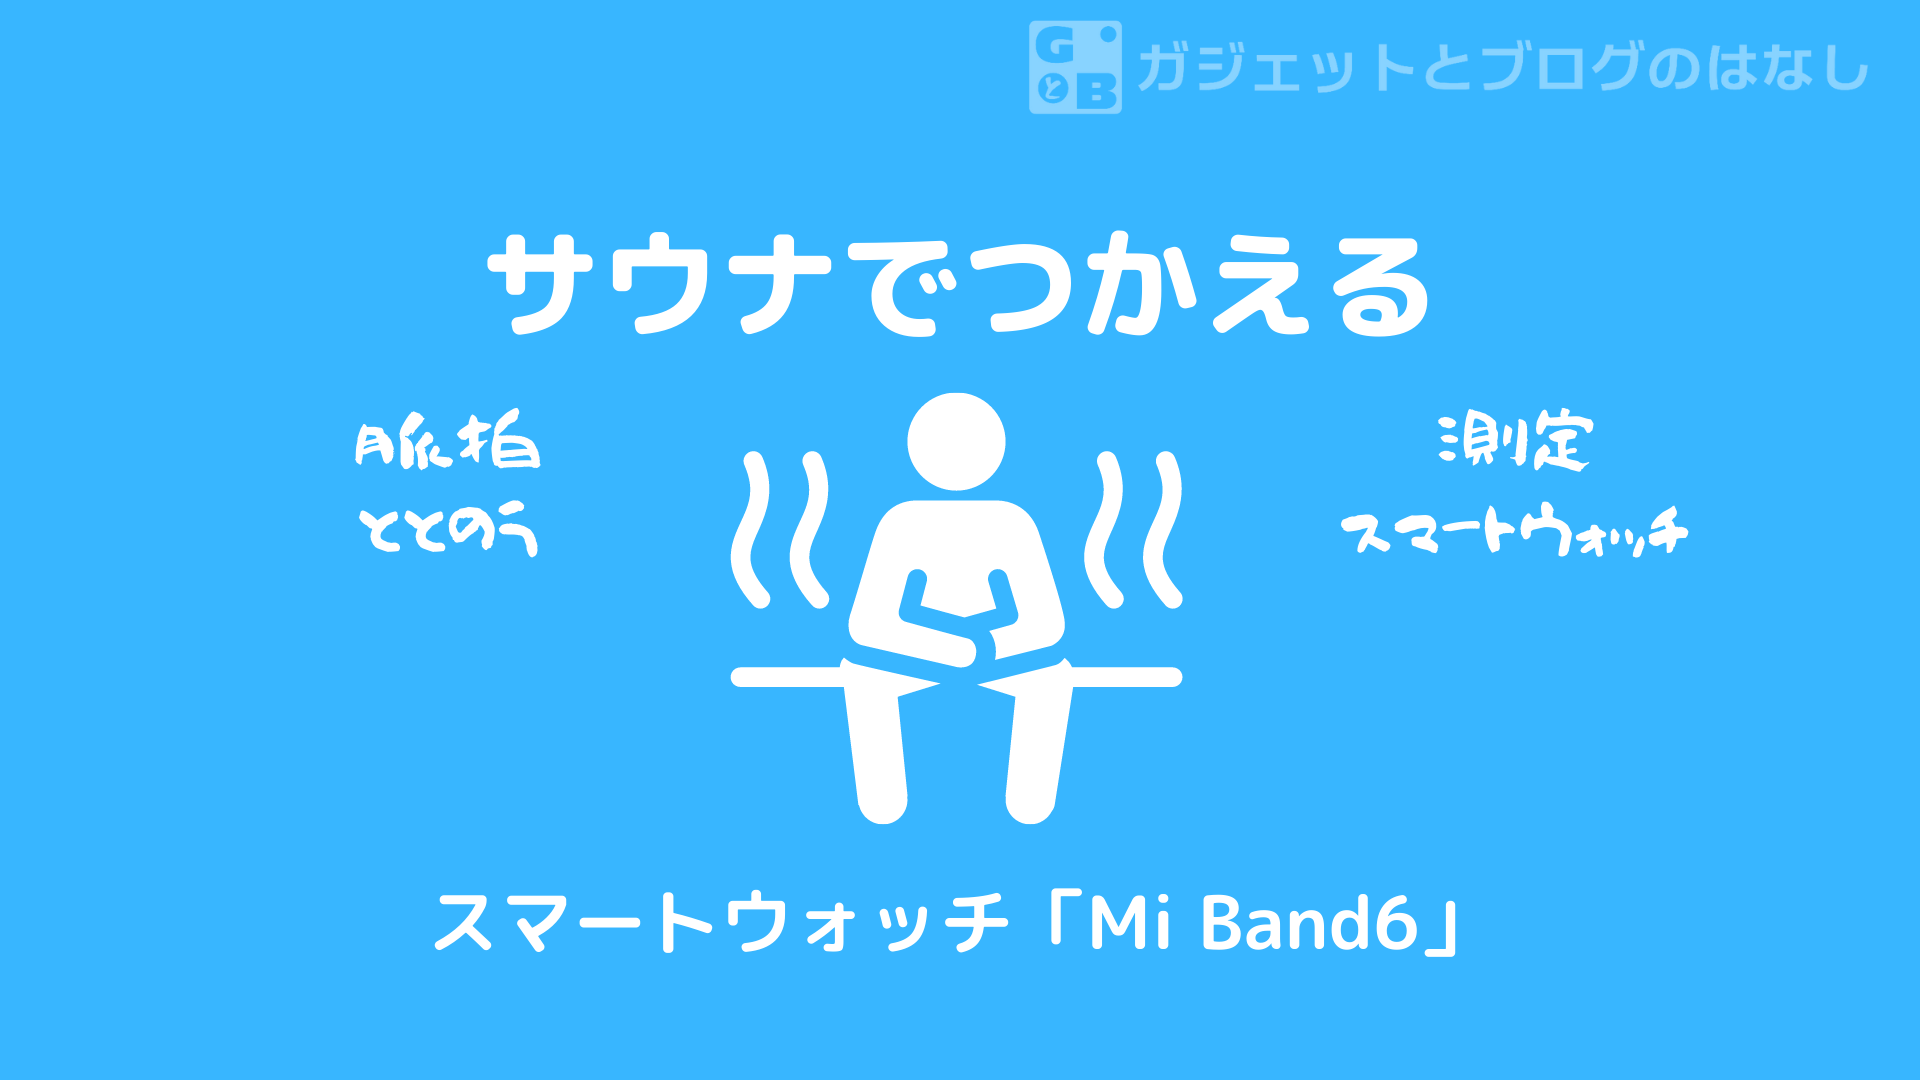 Mi Smart Band 6】サウナで使えるスマートウォッチ【Mi Band6】 ガジェットとブログのはなし